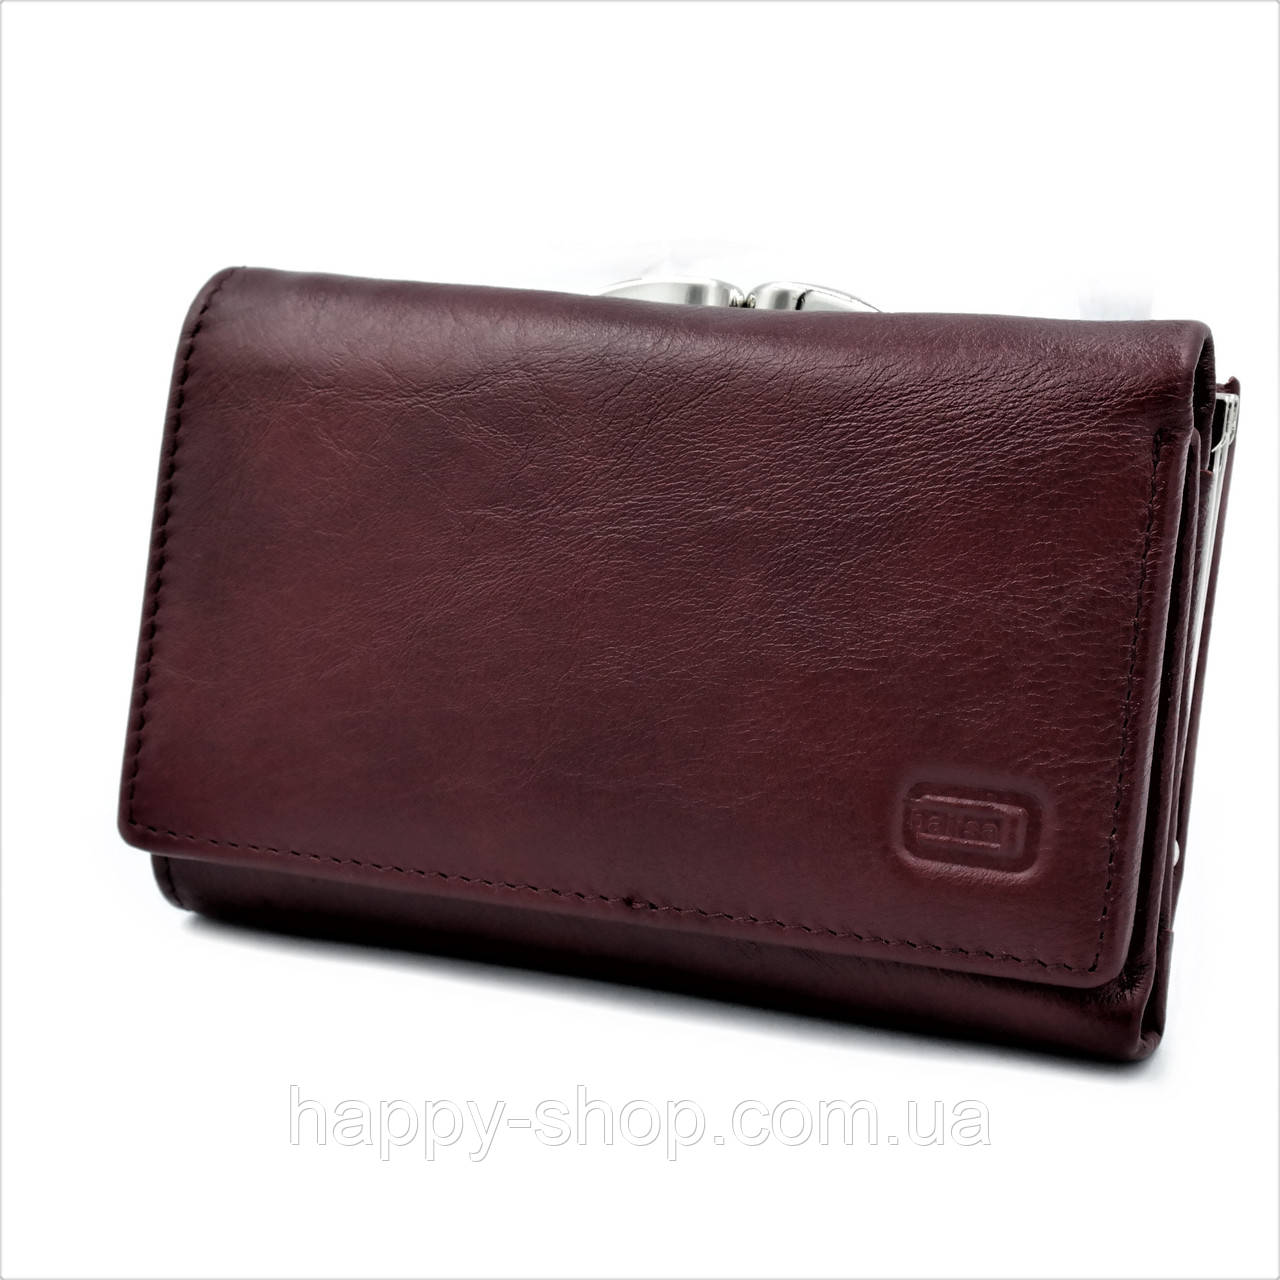 Жіночий шкіряний гаманець Weatro 13 х 8,5 х 3,5 см Бордовий H148-PY-1